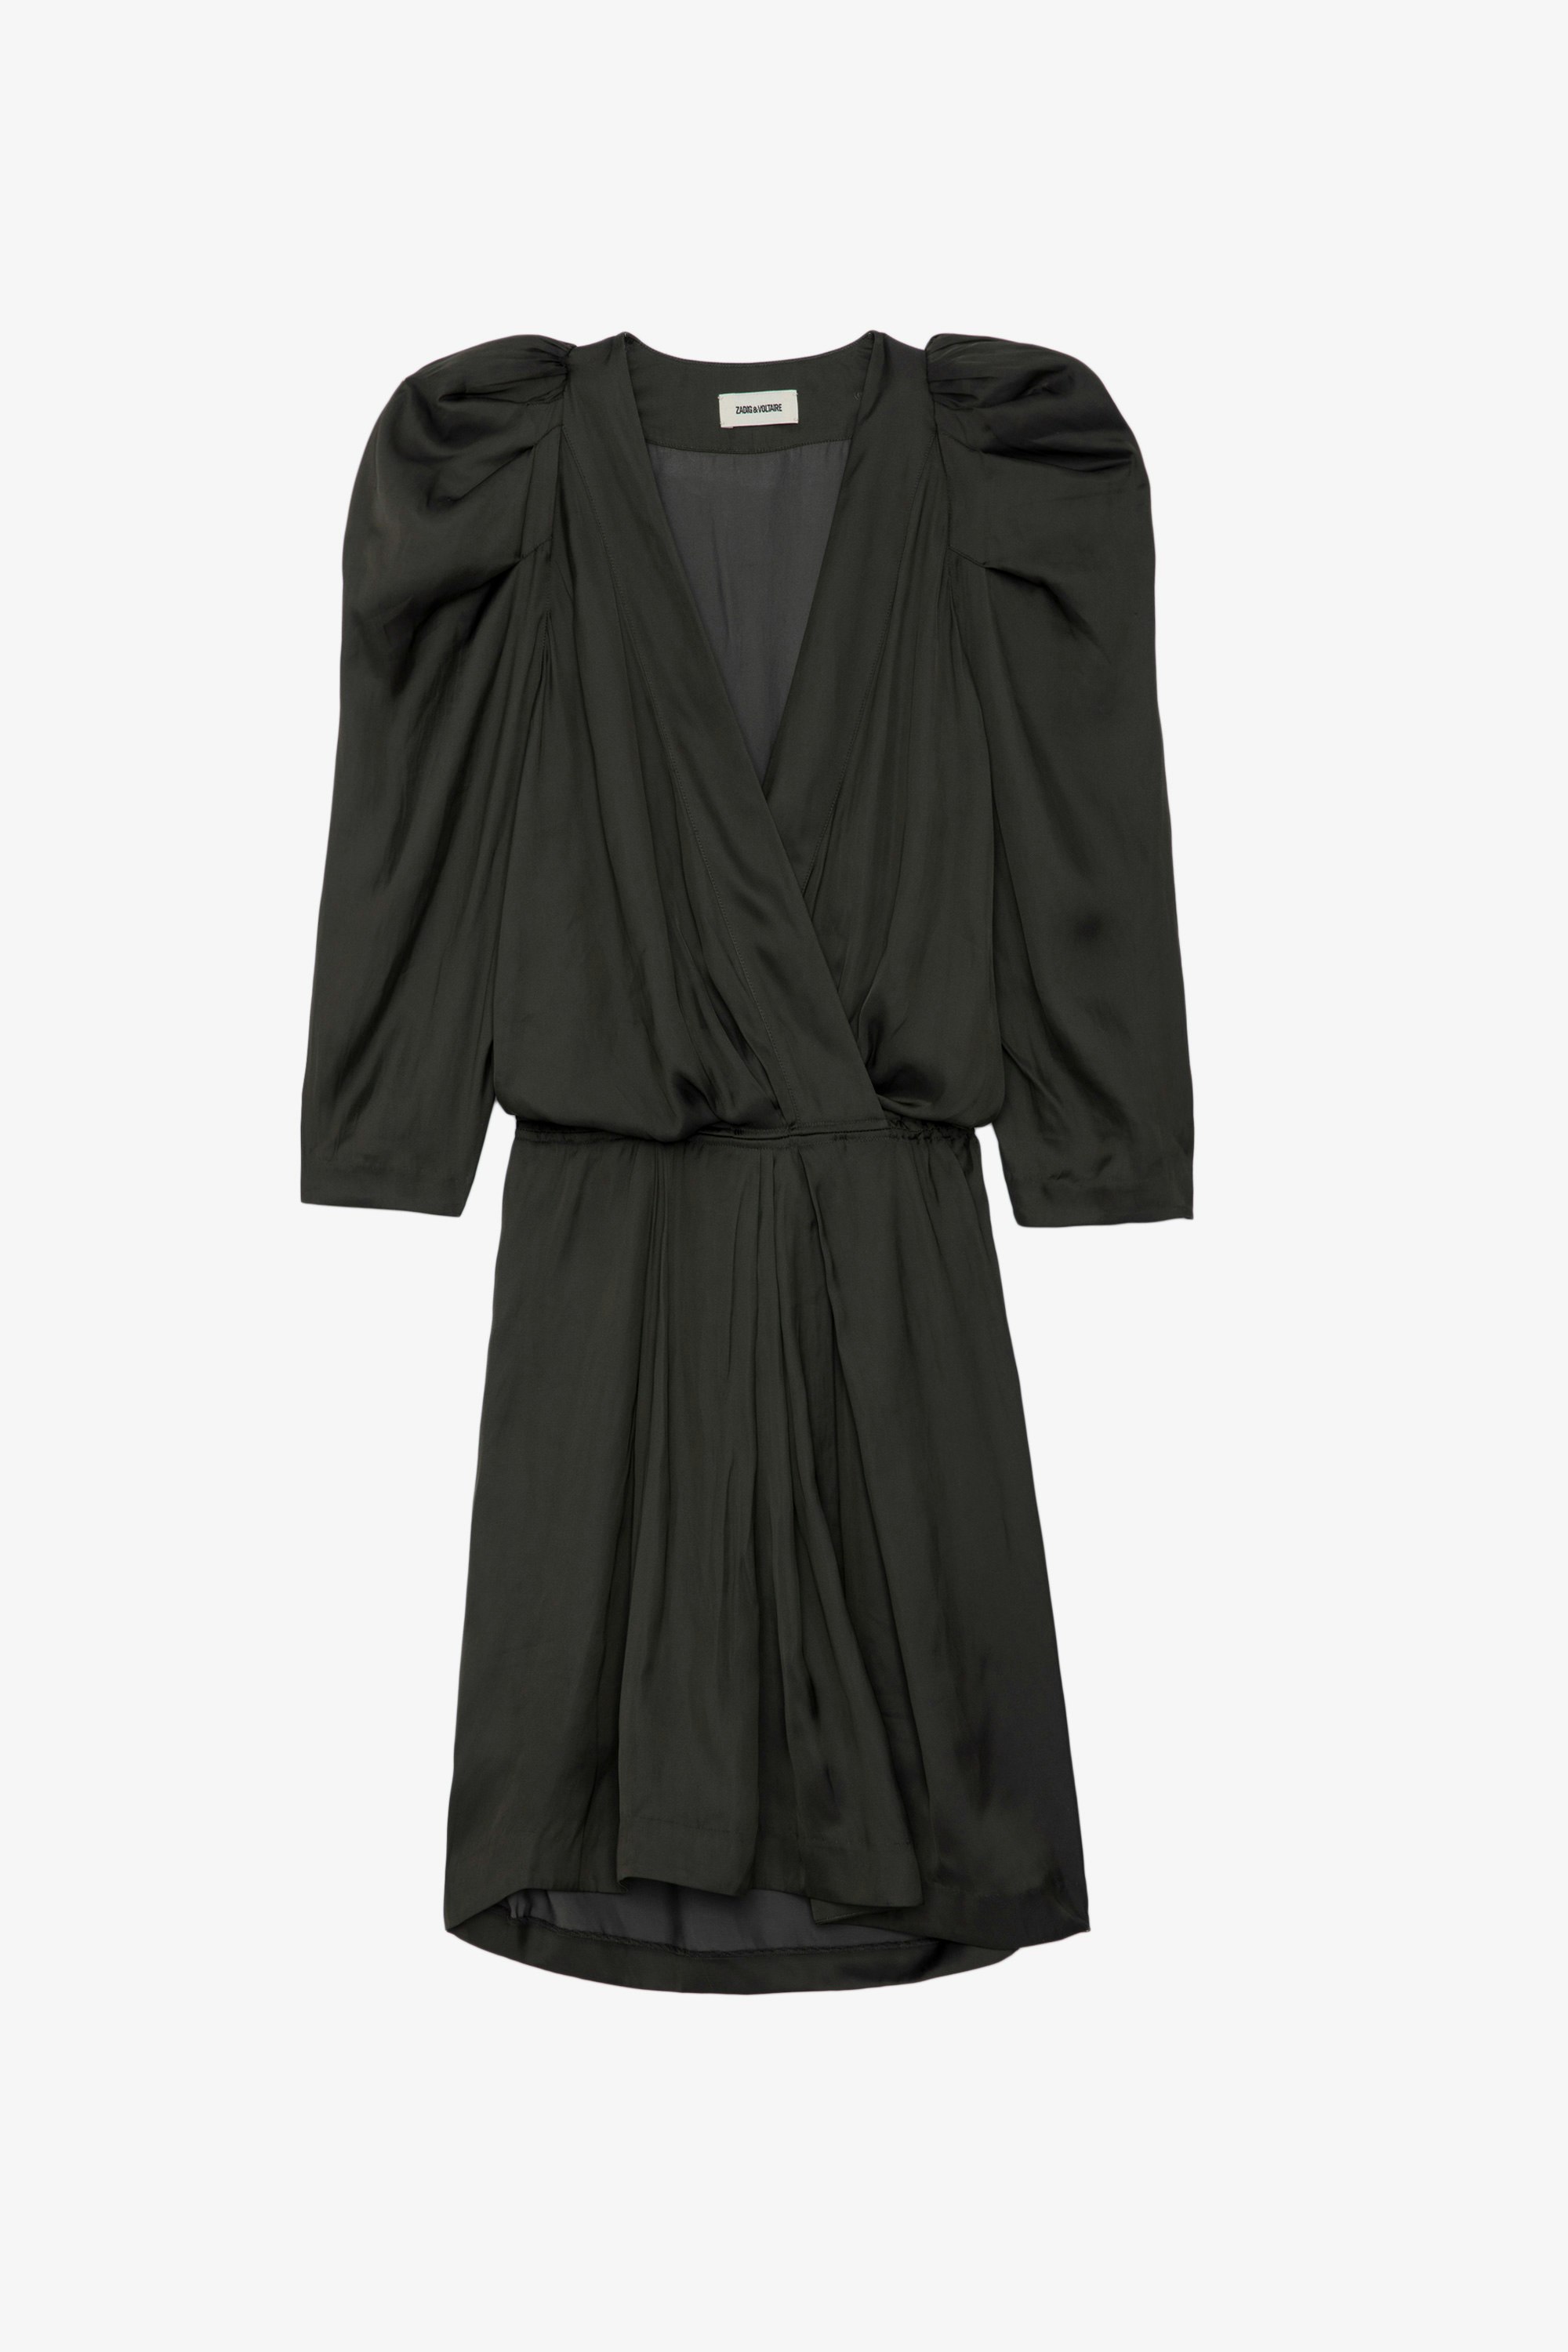 Kleid Ruz Satin - Kurzes, anthrazit Satinkleid mit 3/4-Ärmeln, elastischer Taille und Raffungen an den Schultern.